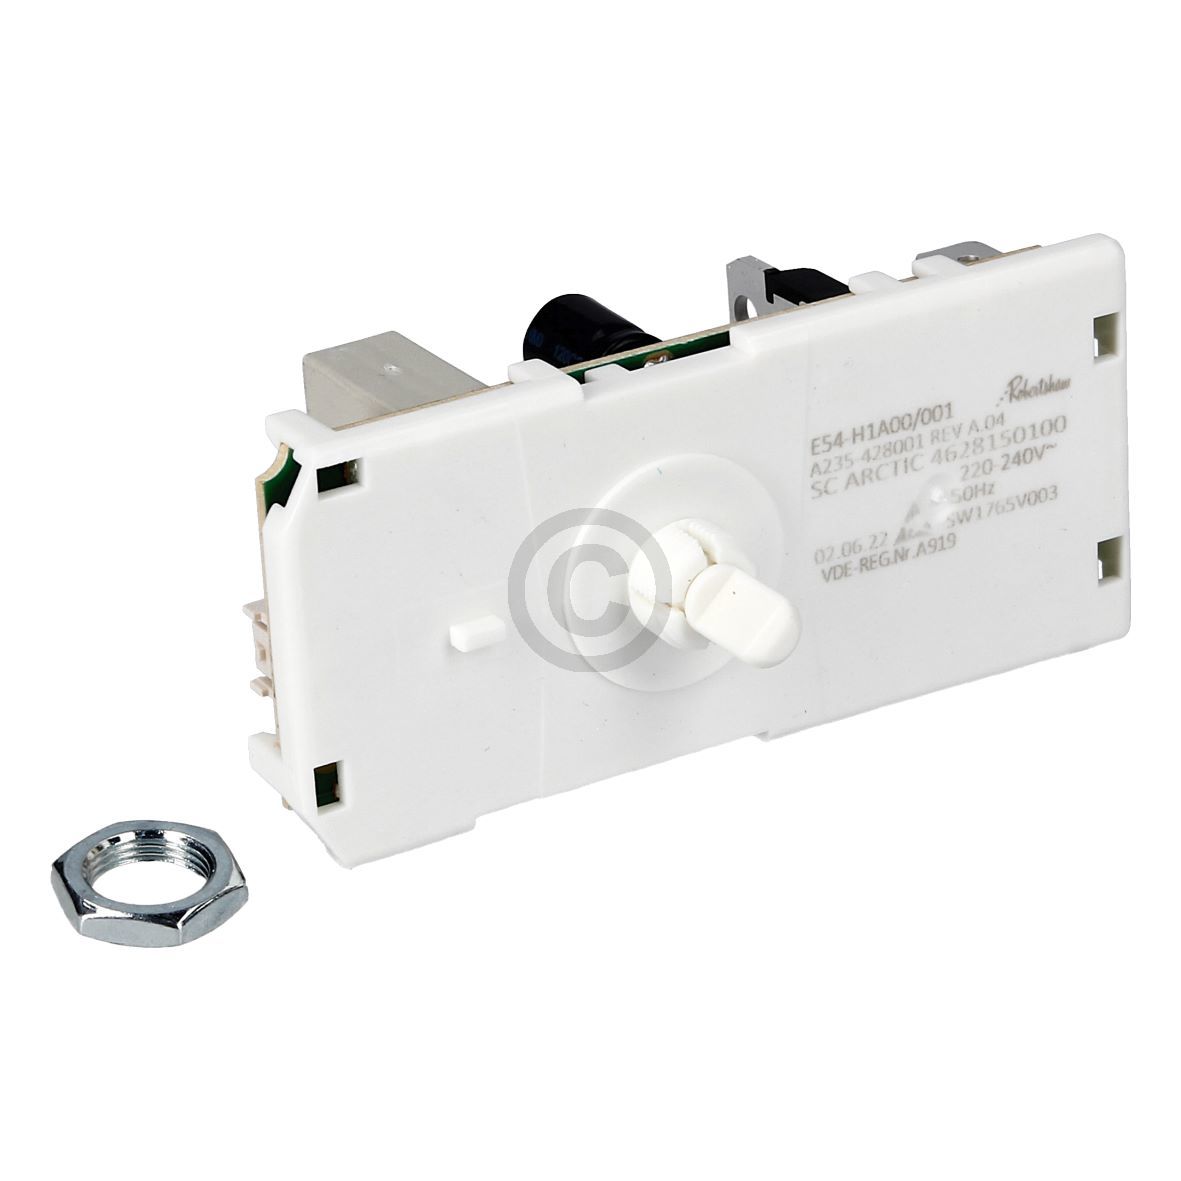 Elektronisches Thermostat beko 4628150100 E54-H1A00 für Gefriertruhe KühlGefrierKombination